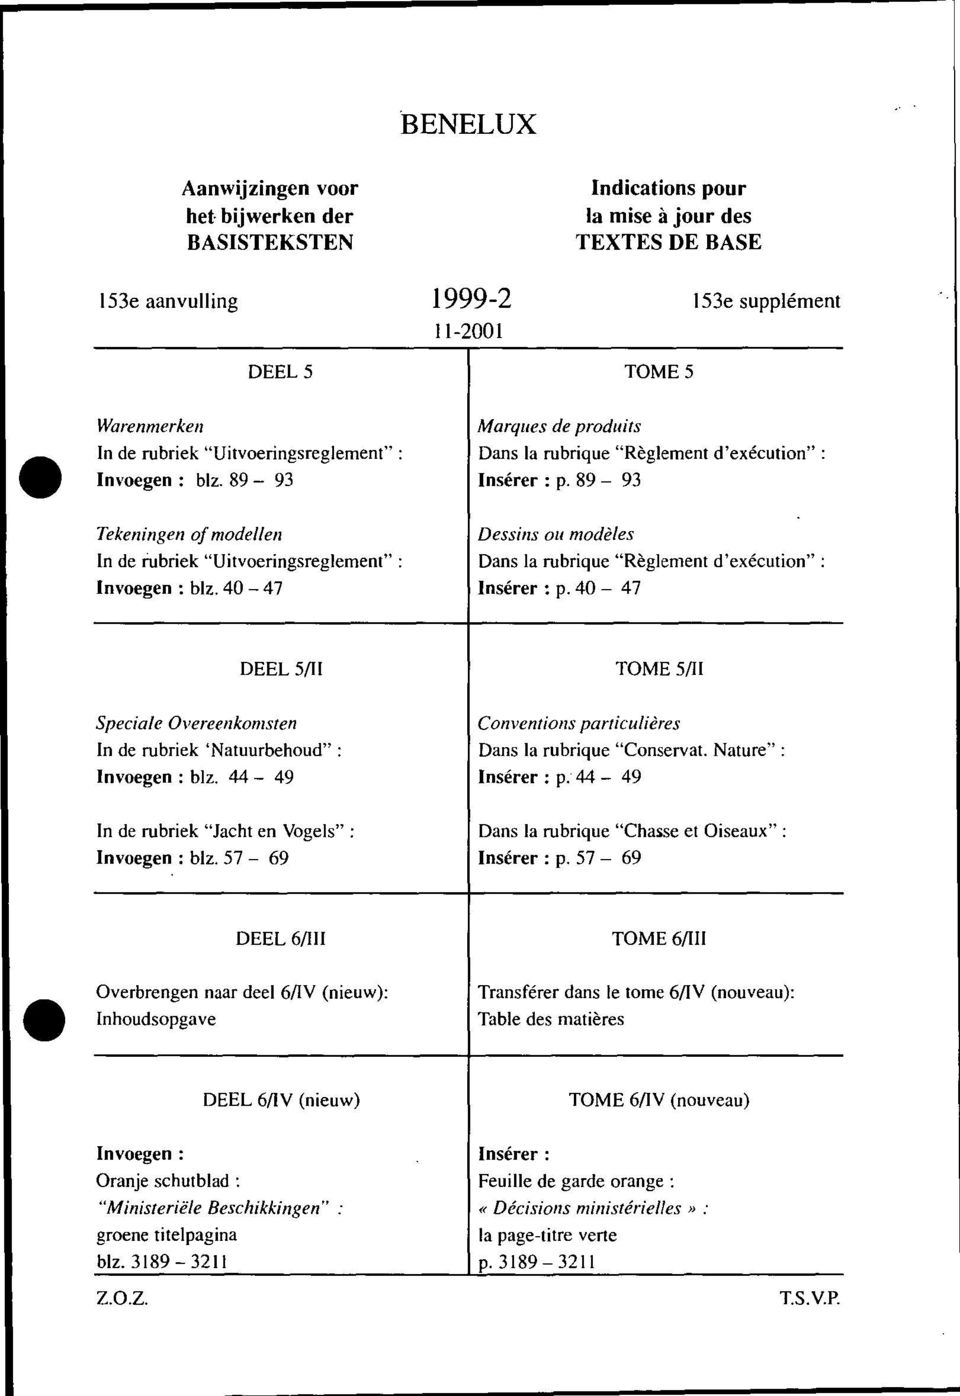 89-93 Tekeningen of modellen Dessins ou modèles In de rubriek "Uitvoeringsreglement" : Dans la rubrique "Règlement d'exécution": Invoegen : blz. 40-47 Insérer : p.